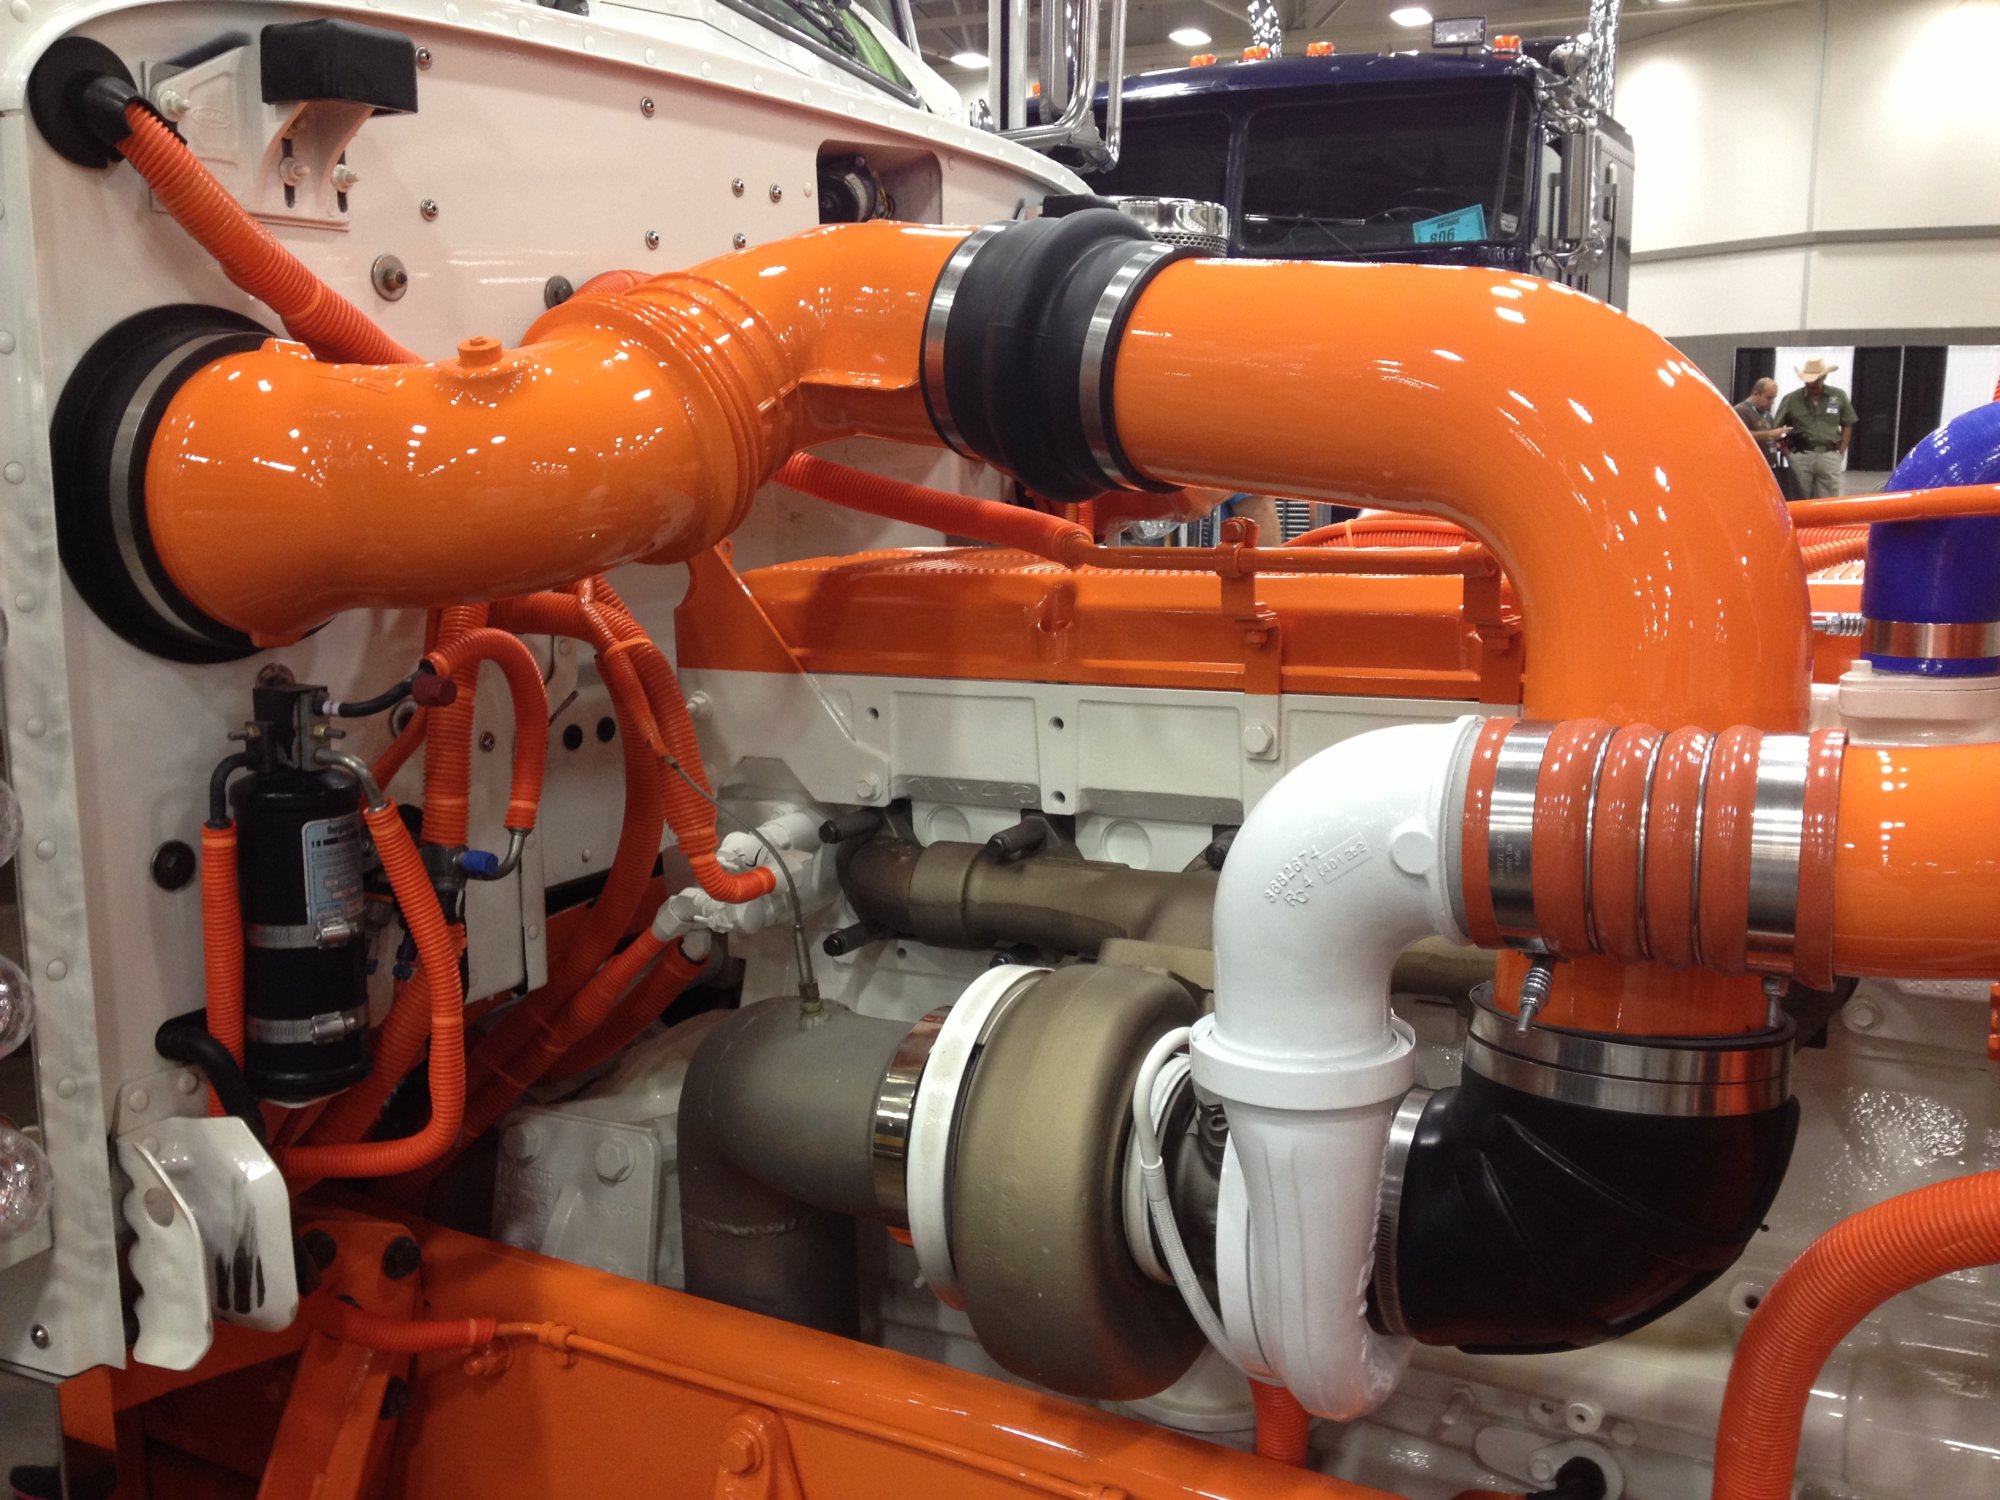 Orange pipes in a diesel engine